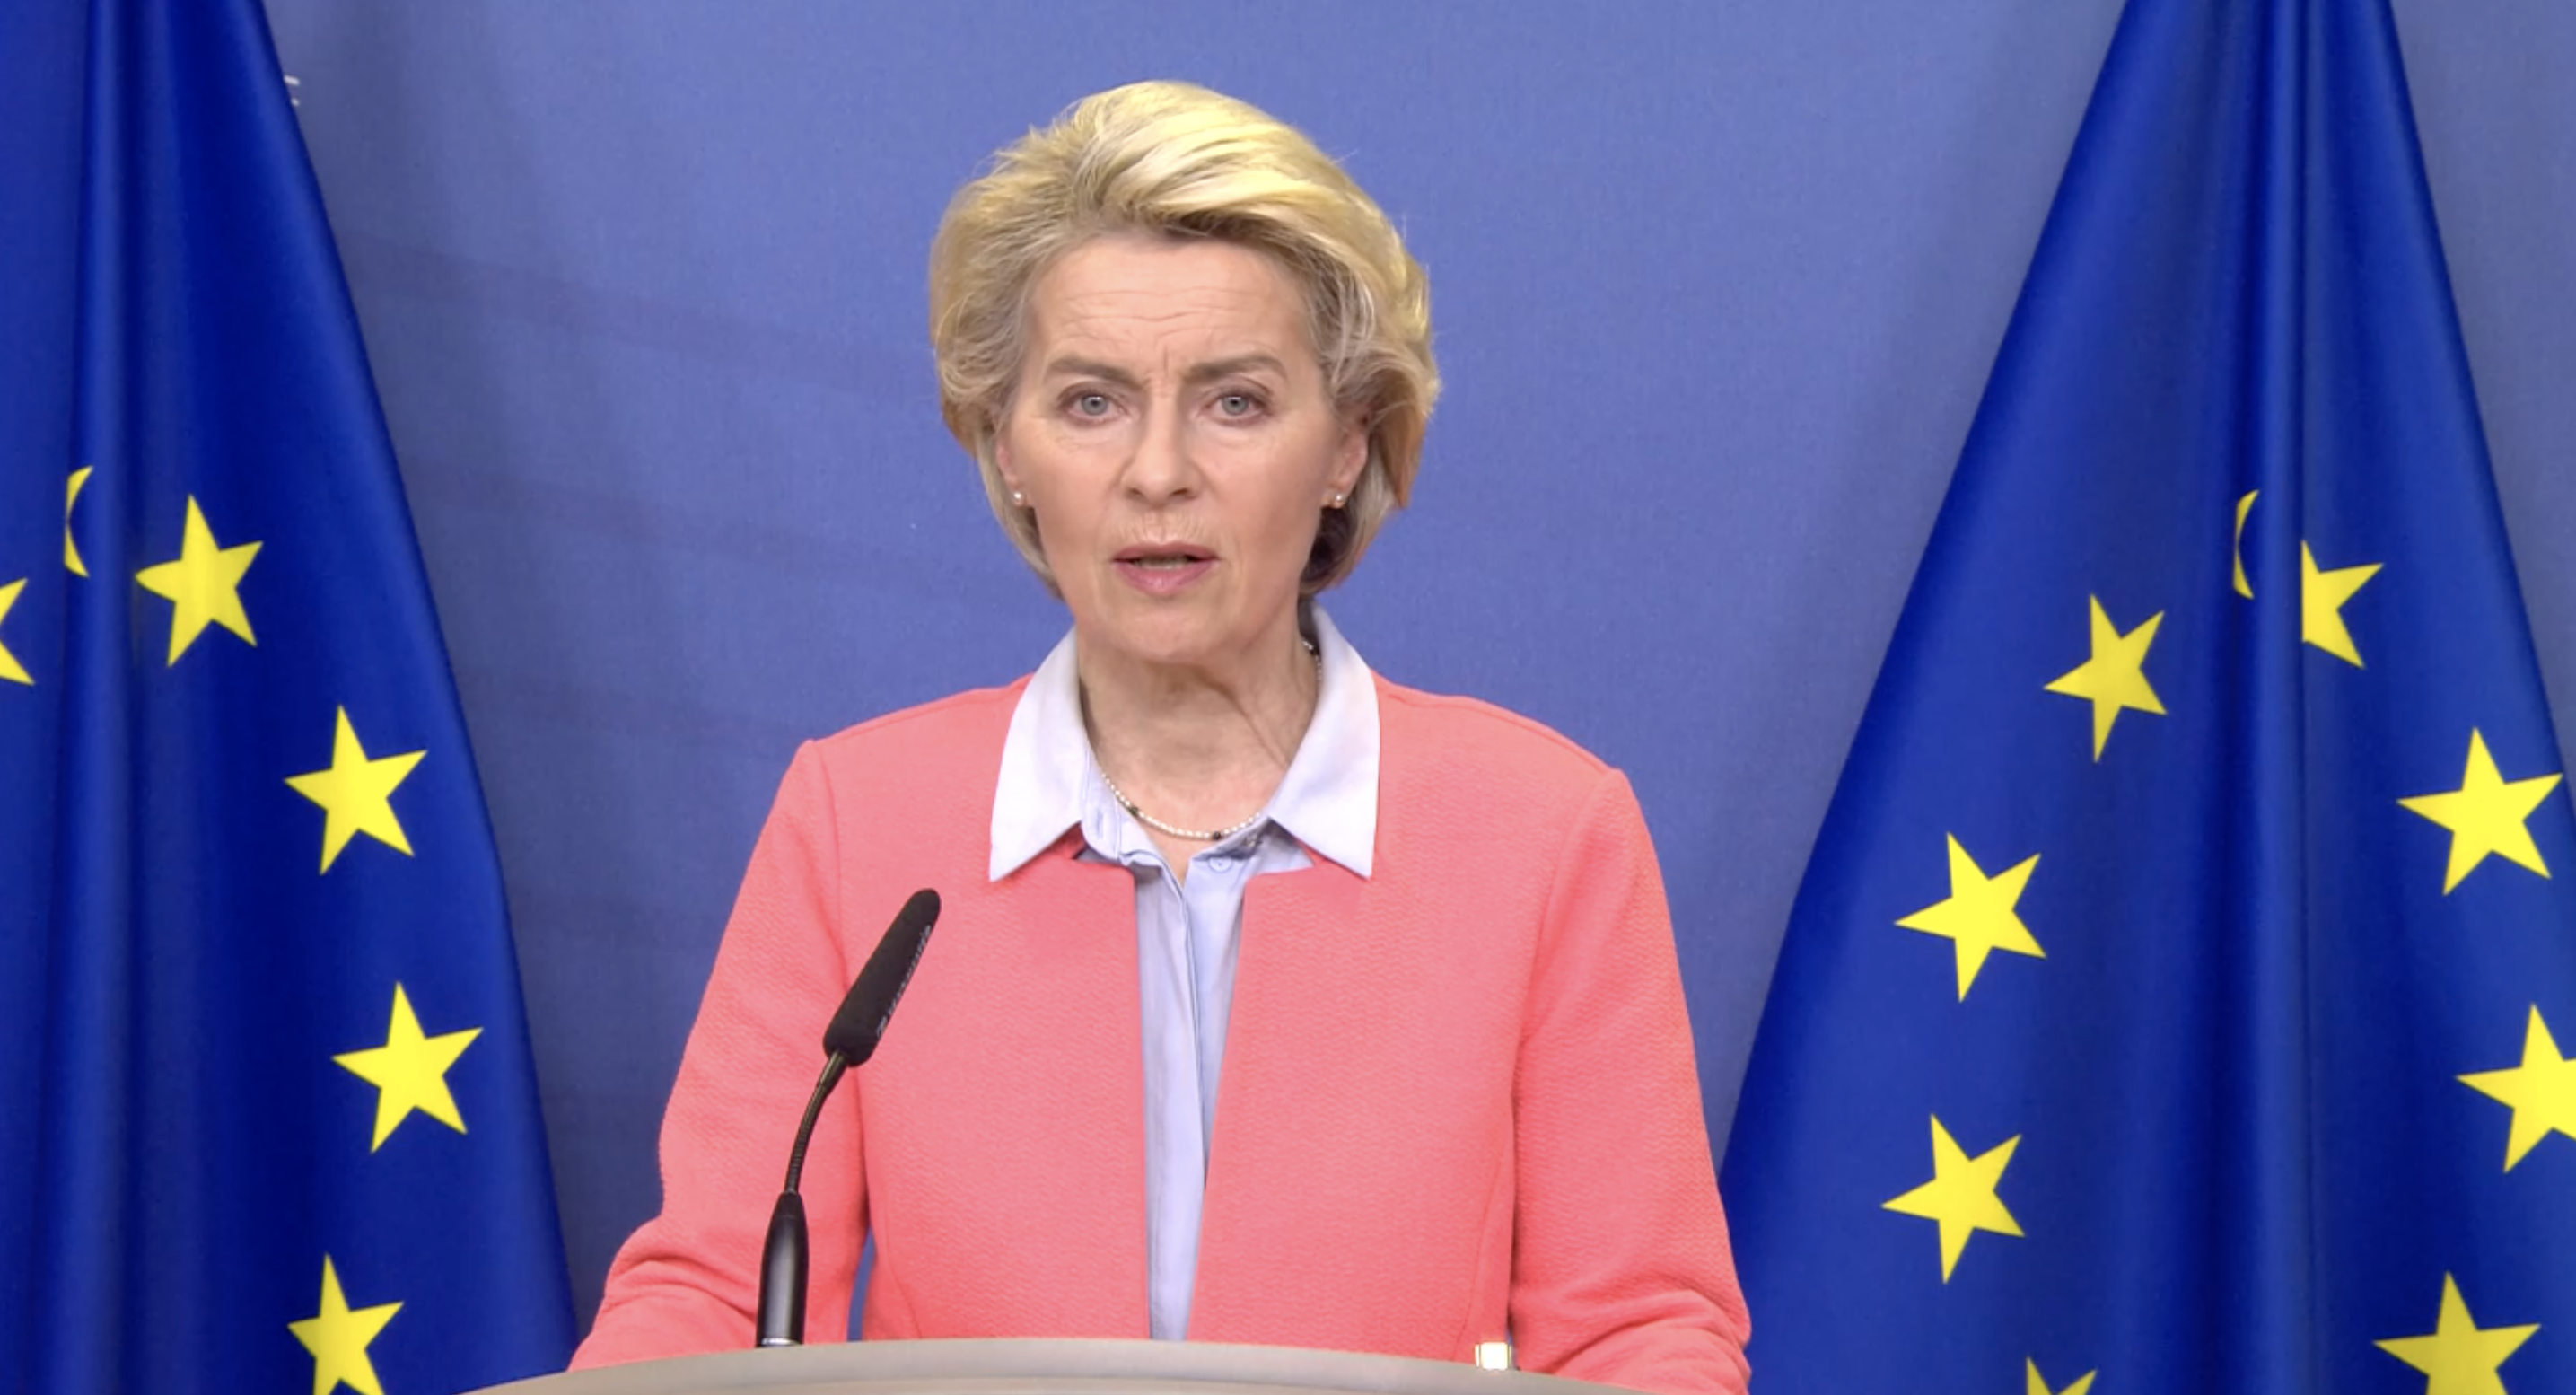 President van de Europese Commissie Ursula von der Leyen. Foto: Videostill/EC Audiovisual Service.